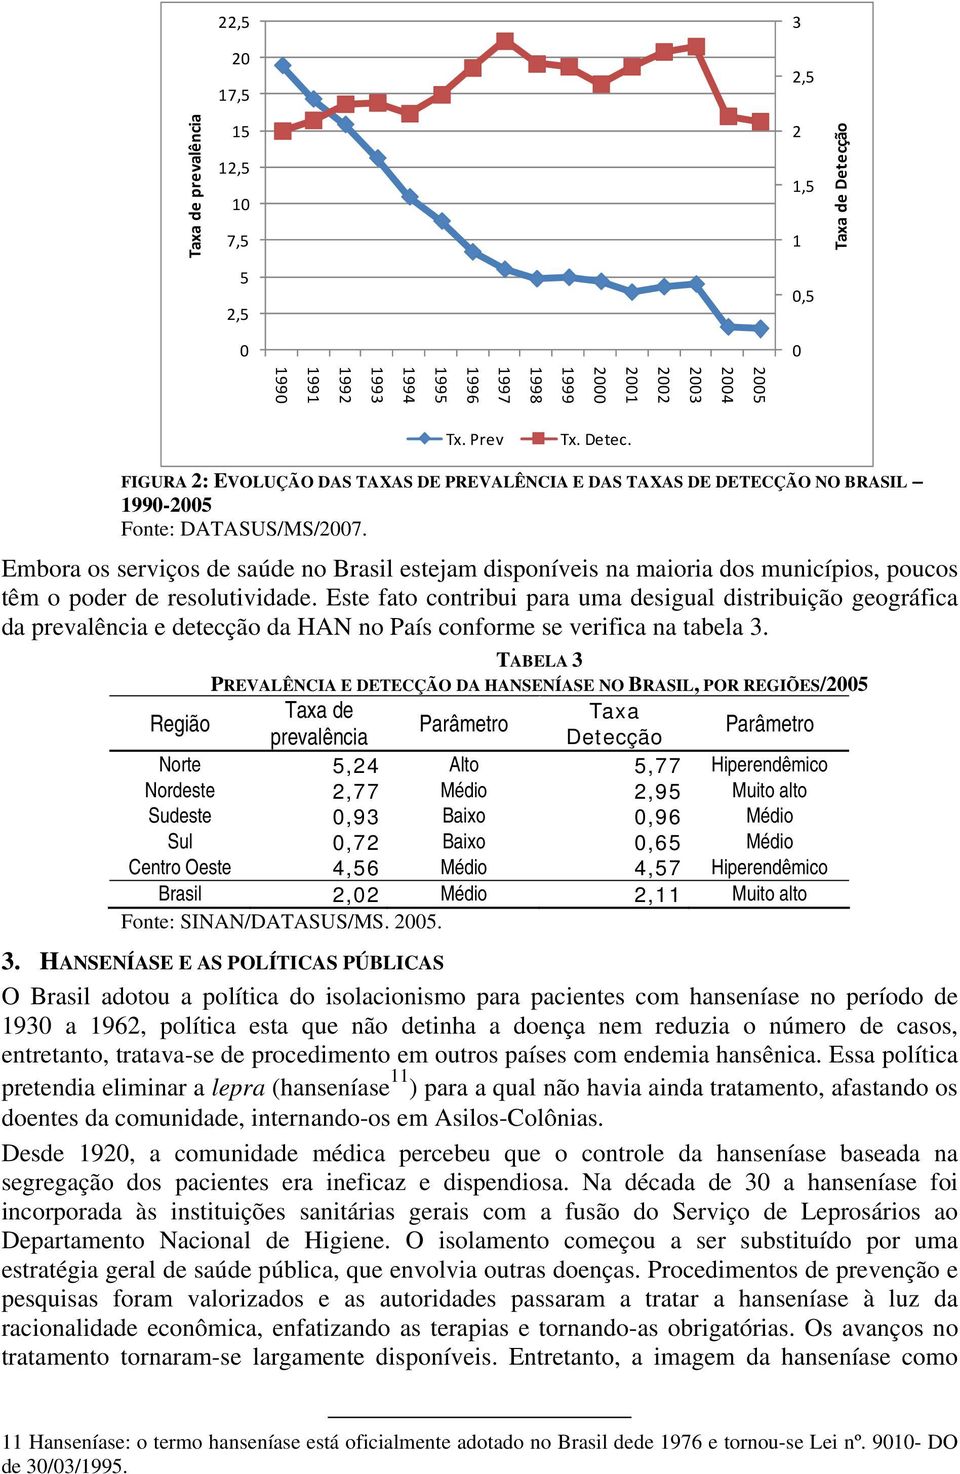 FIGURA 2: EVOLUÇÃO DAS TAXAS DE PREVALÊNCIA E DAS TAXAS DE DETECÇÃO NO BRASIL 1990-2005 Fonte: DATASUS/MS/2007.